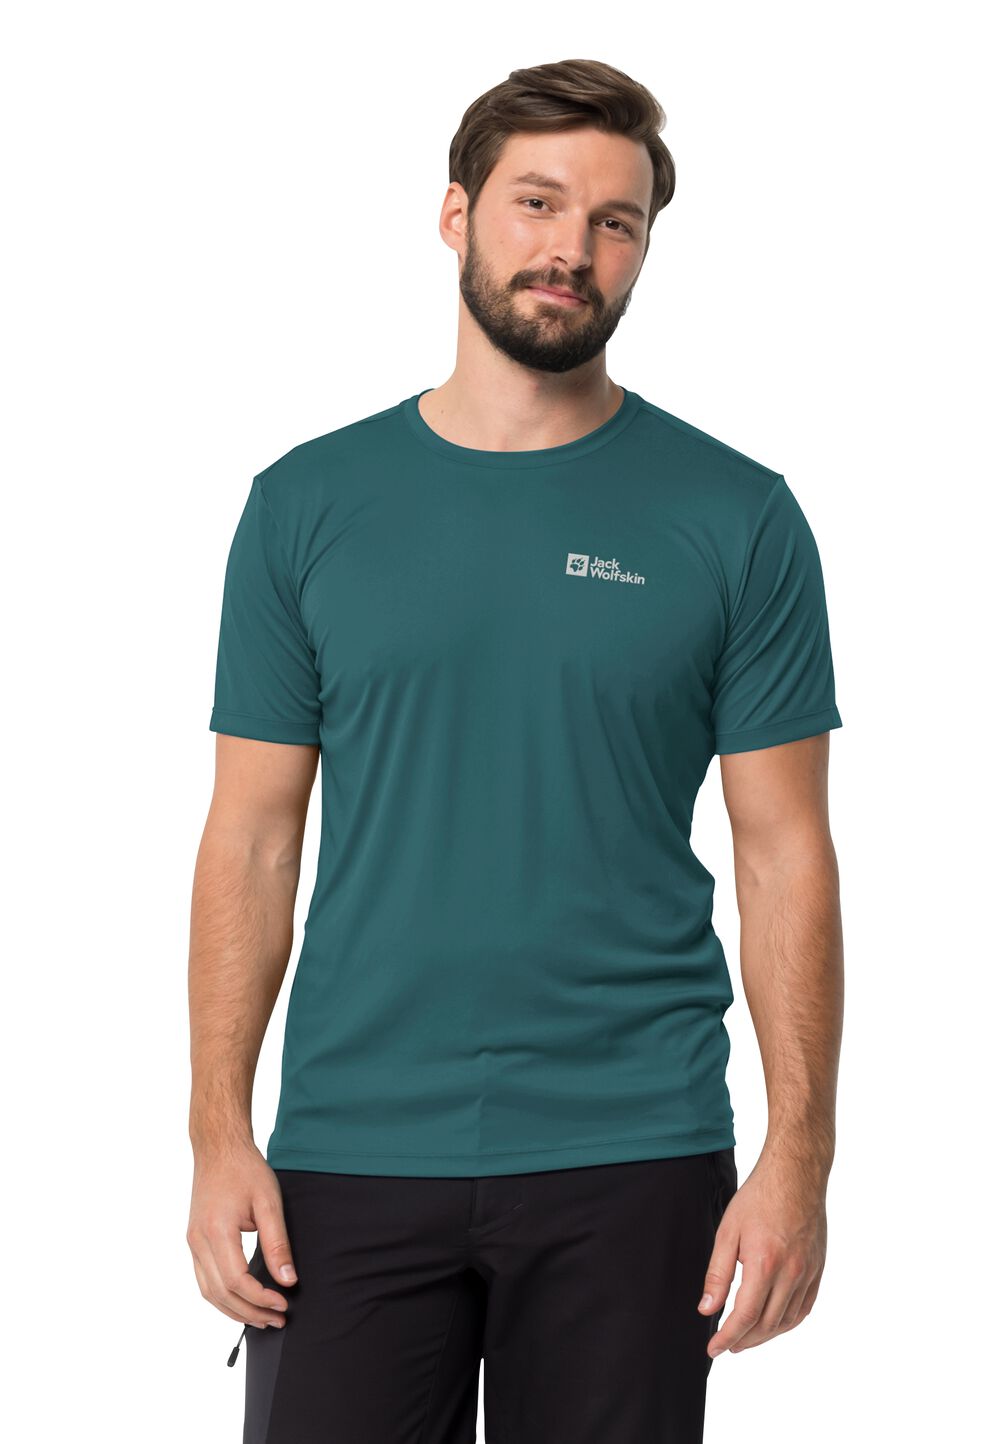 Jack Wolfskin Tech T-Shirt Men Functioneel shirt Heren 3XL emerald